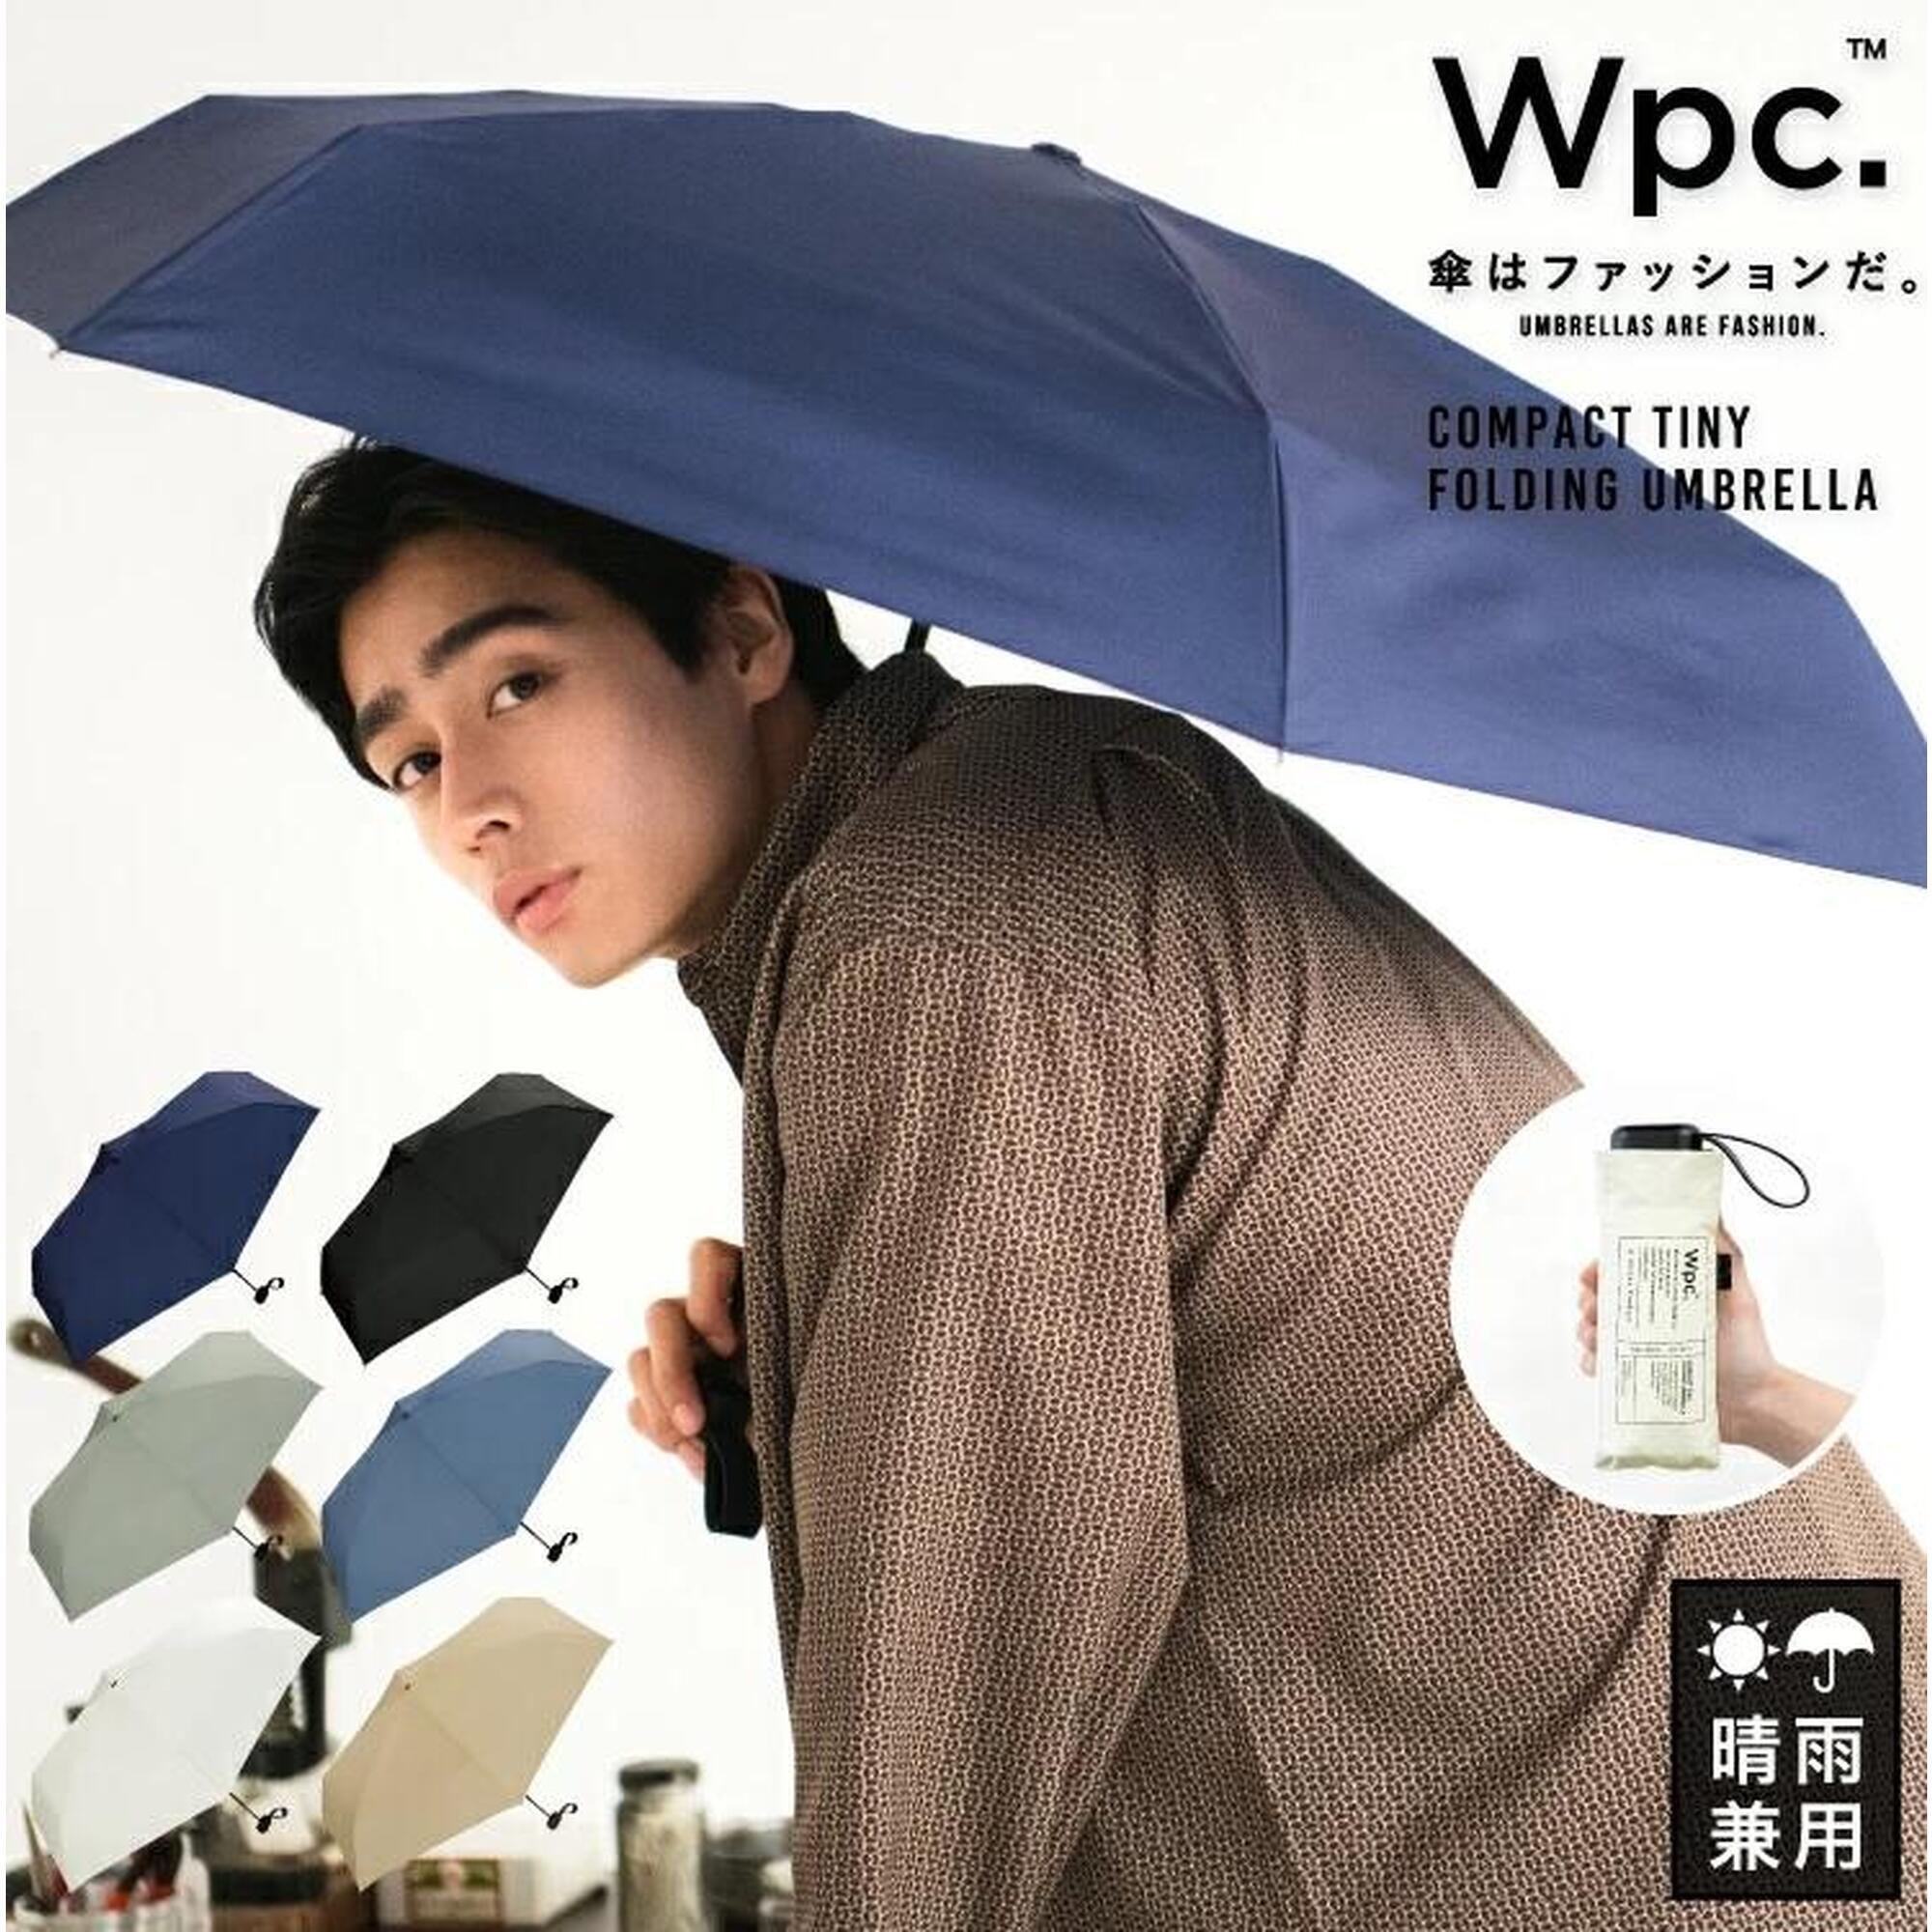 袖珍純色縮骨雨傘 - 淺灰色